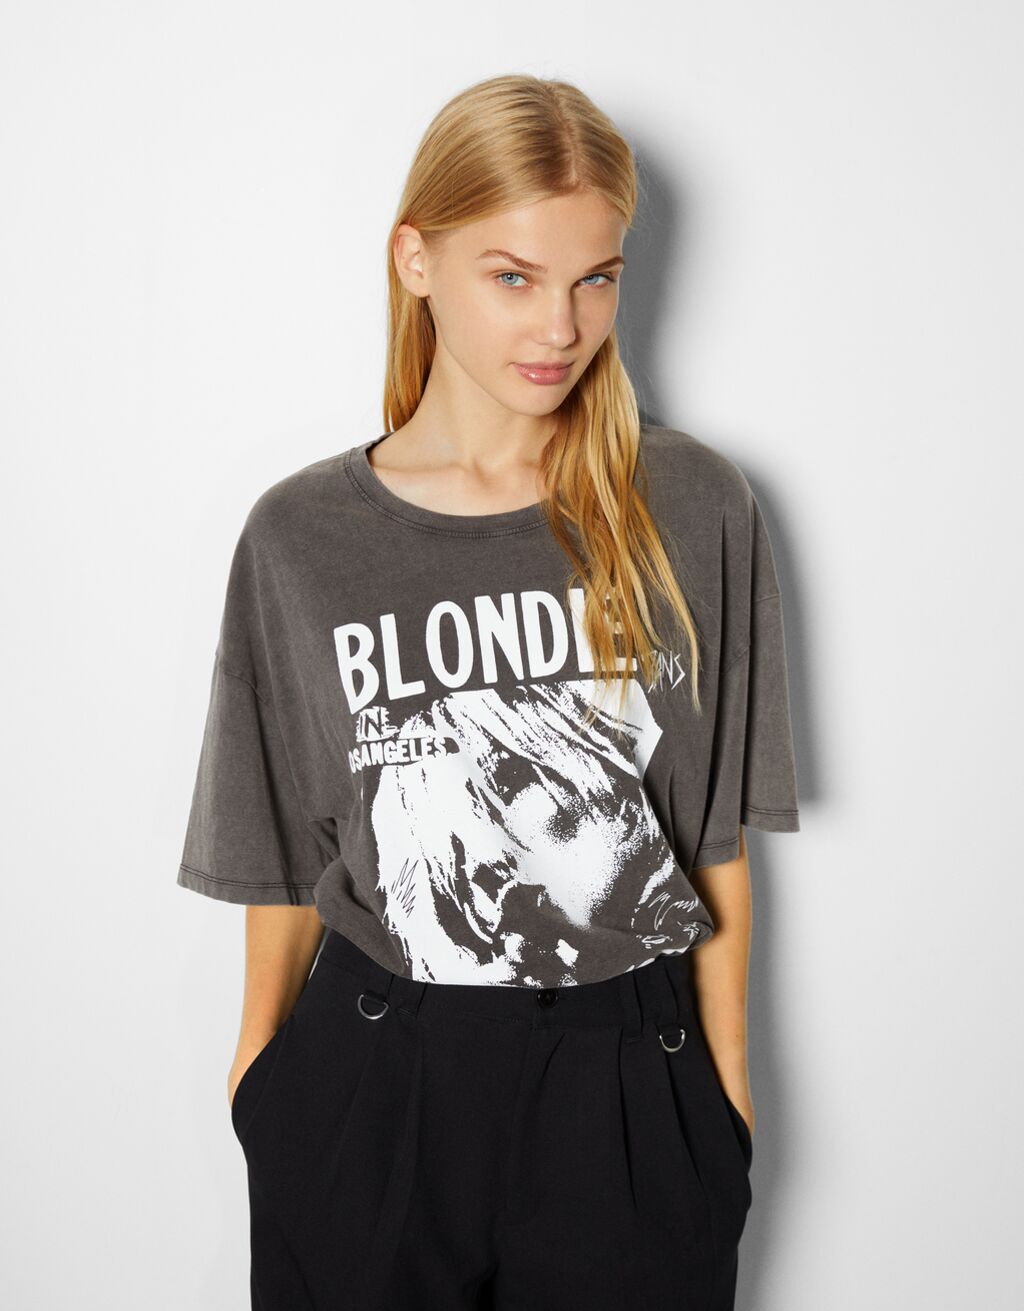 Tričko s krátkými rukávy a potiskem Blondie